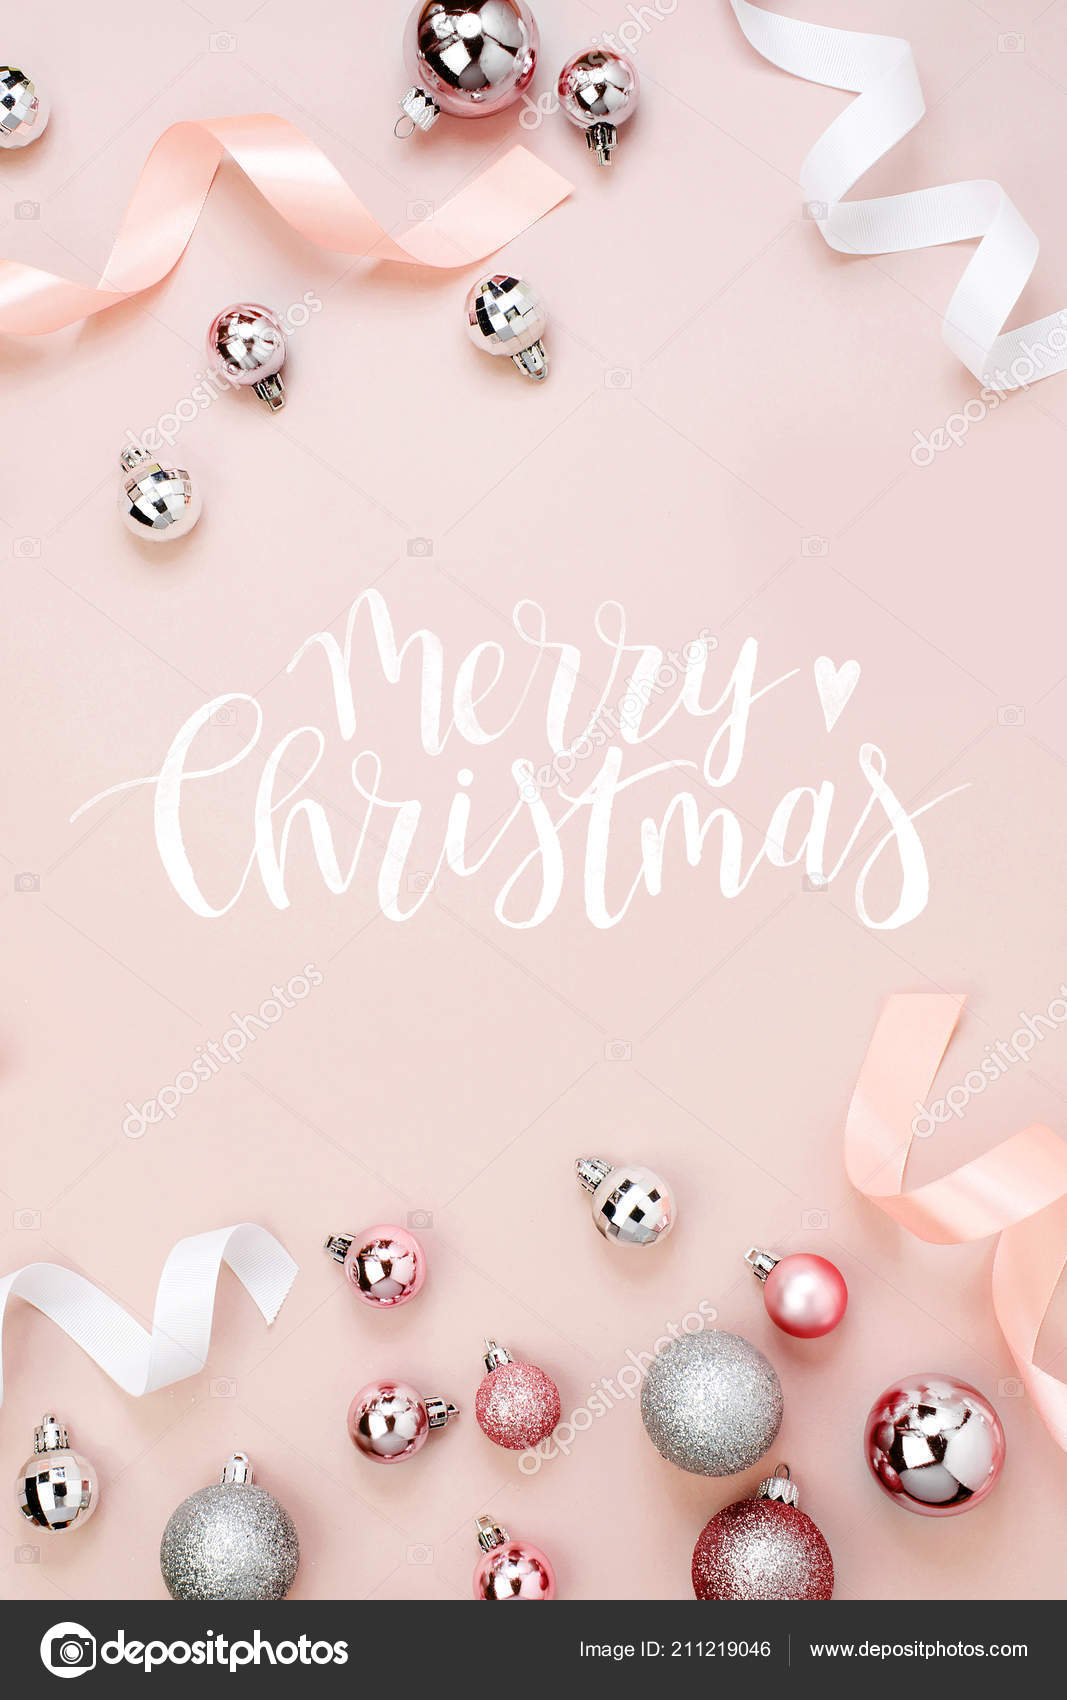 Hướng dẫn tạo Merry Christmas background pink siêu đơn giản